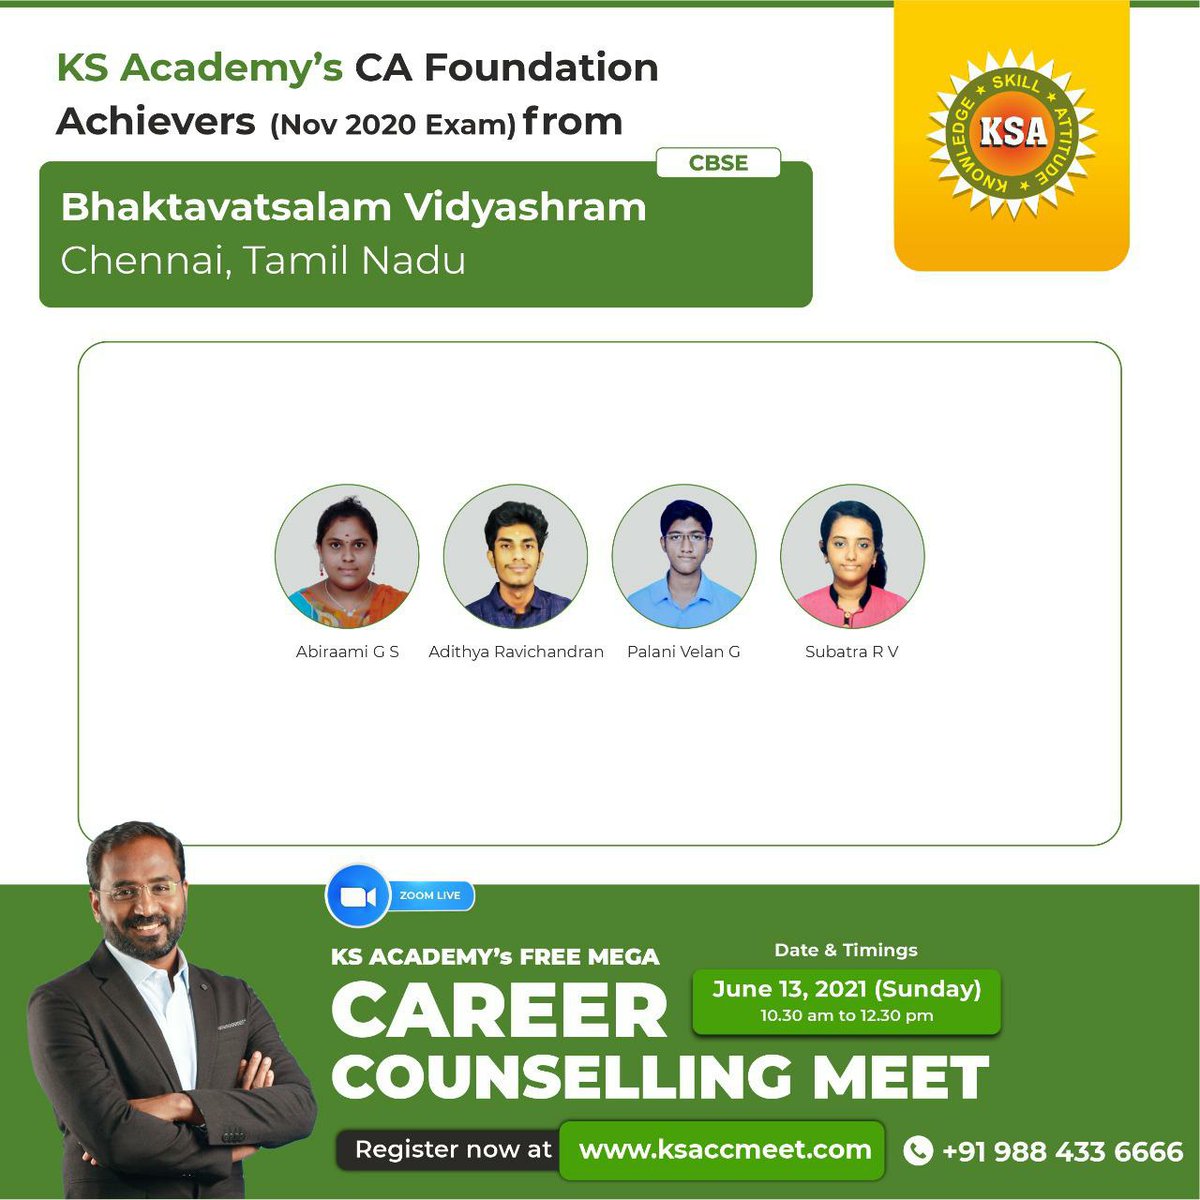 KS Academy's CA Foundation Achievers (November 2020 Exam) from Bhaktavatsalam Vidyashram, Chennai, Tamil Nadu

#Bhakthavatsalam #School #Bhaktavatsalam_vidyashram #Student #Cleared #Exams #Examinations #12thExams #BoardExams #KSA #KS_Academy #CA_Coaching #CA_Foundation #CA